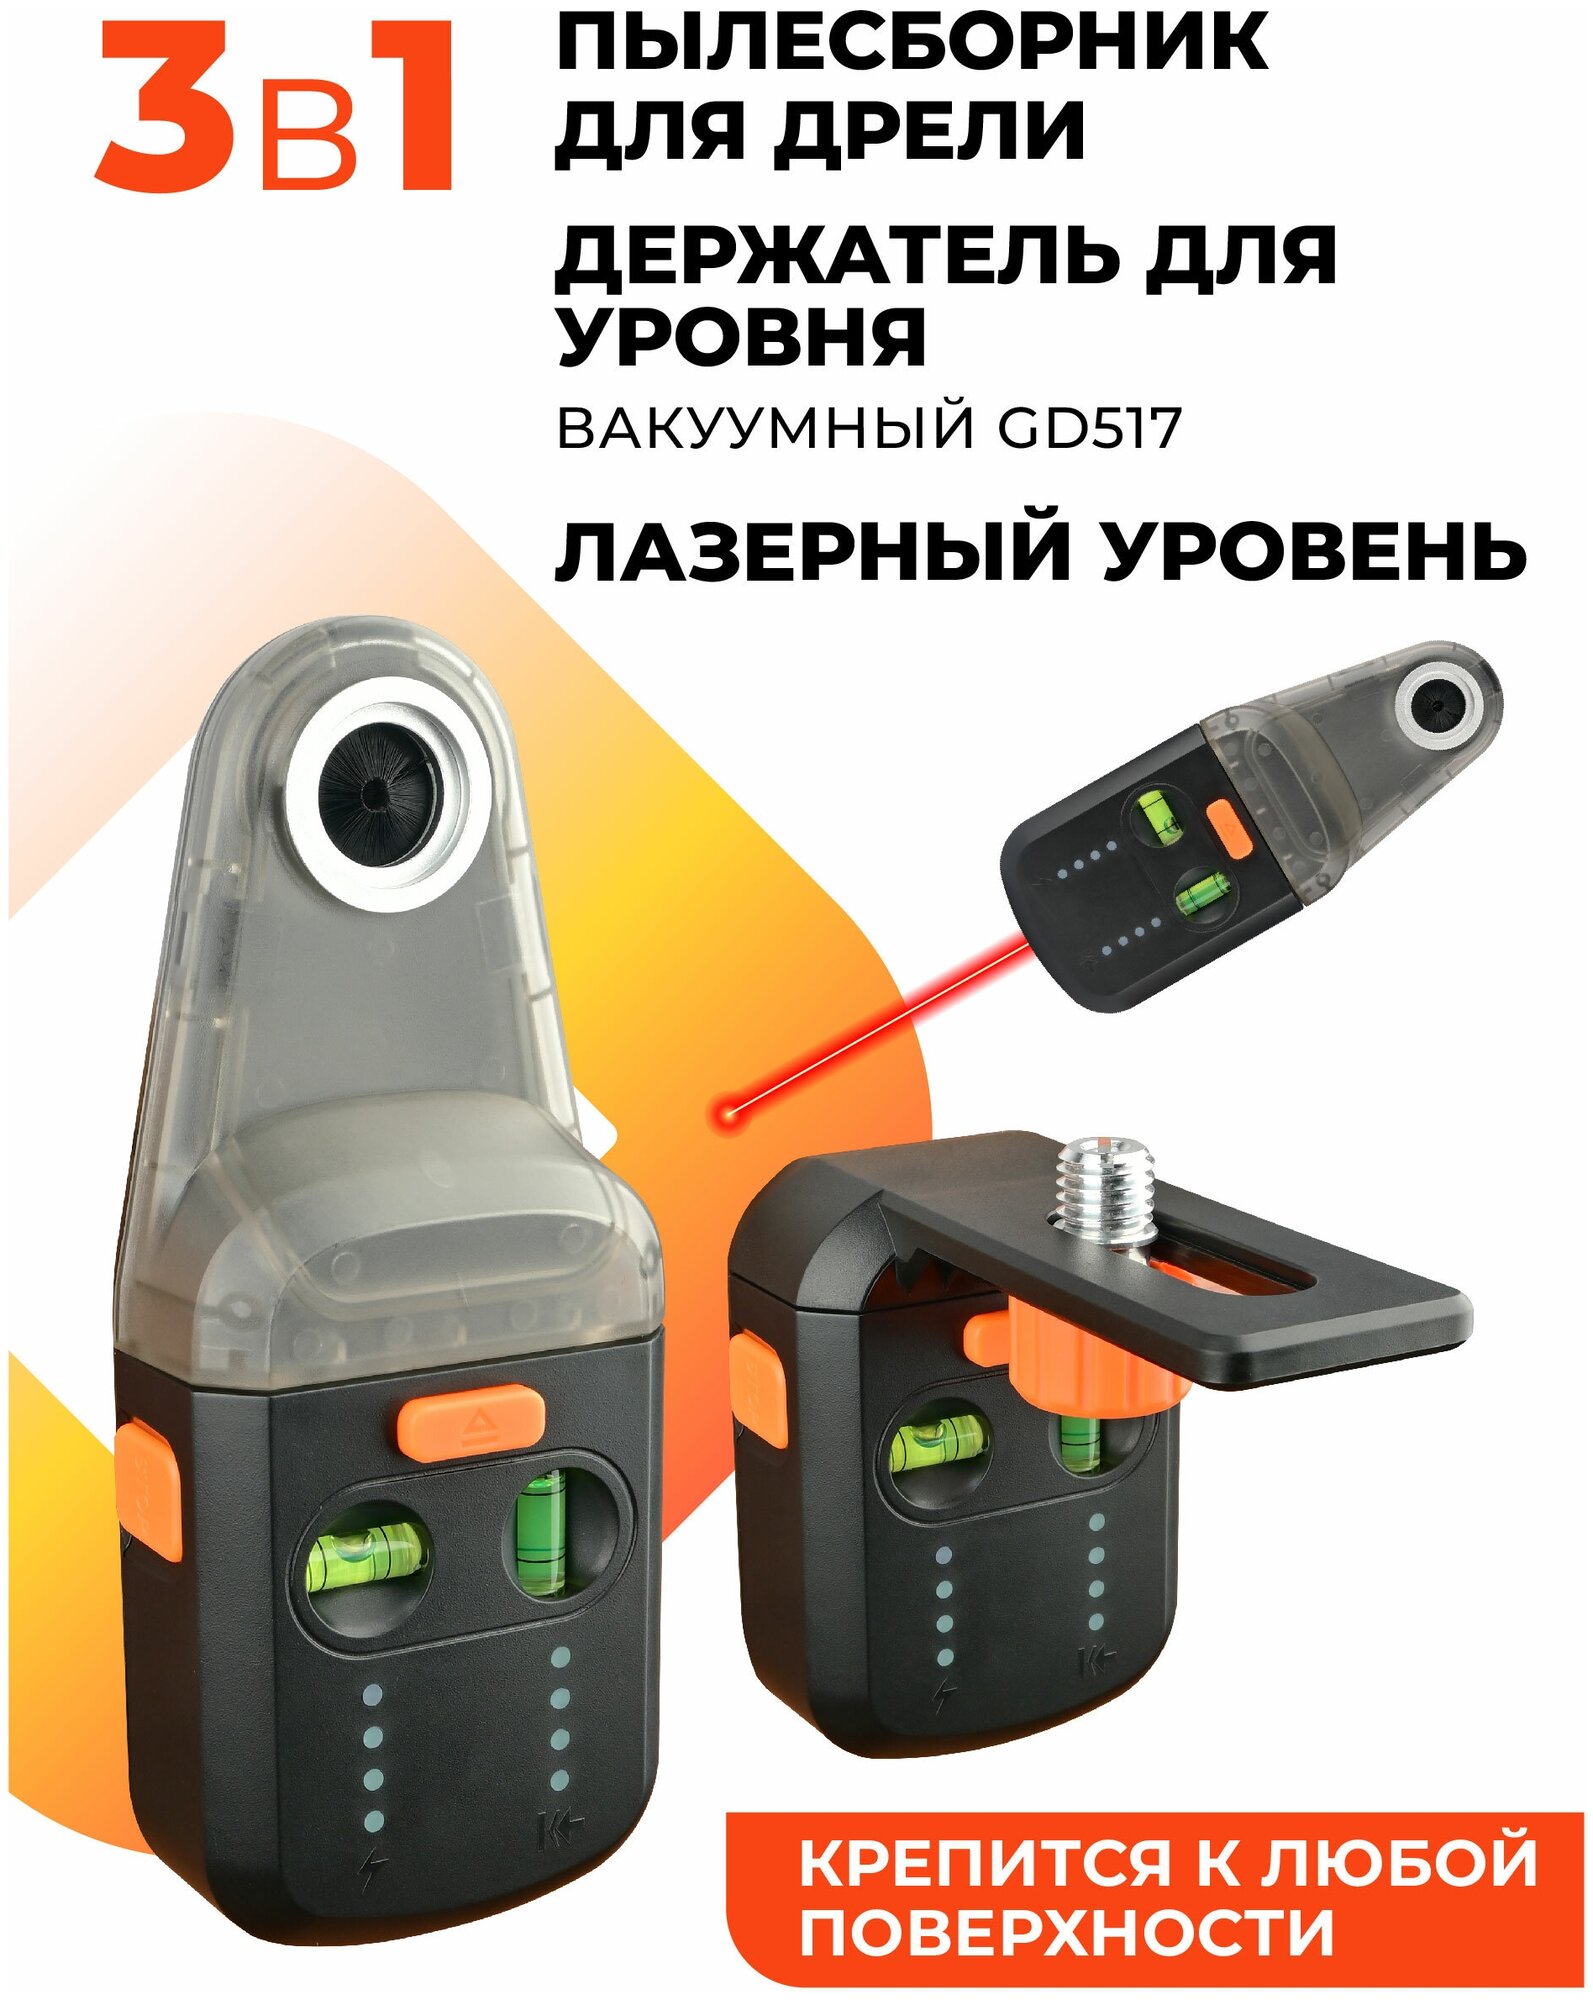 Аккумуляторный пылесборник для дрели и перфоратора с лазерным уровнем/держатель для уровня вакуумный GD517 - фотография № 1